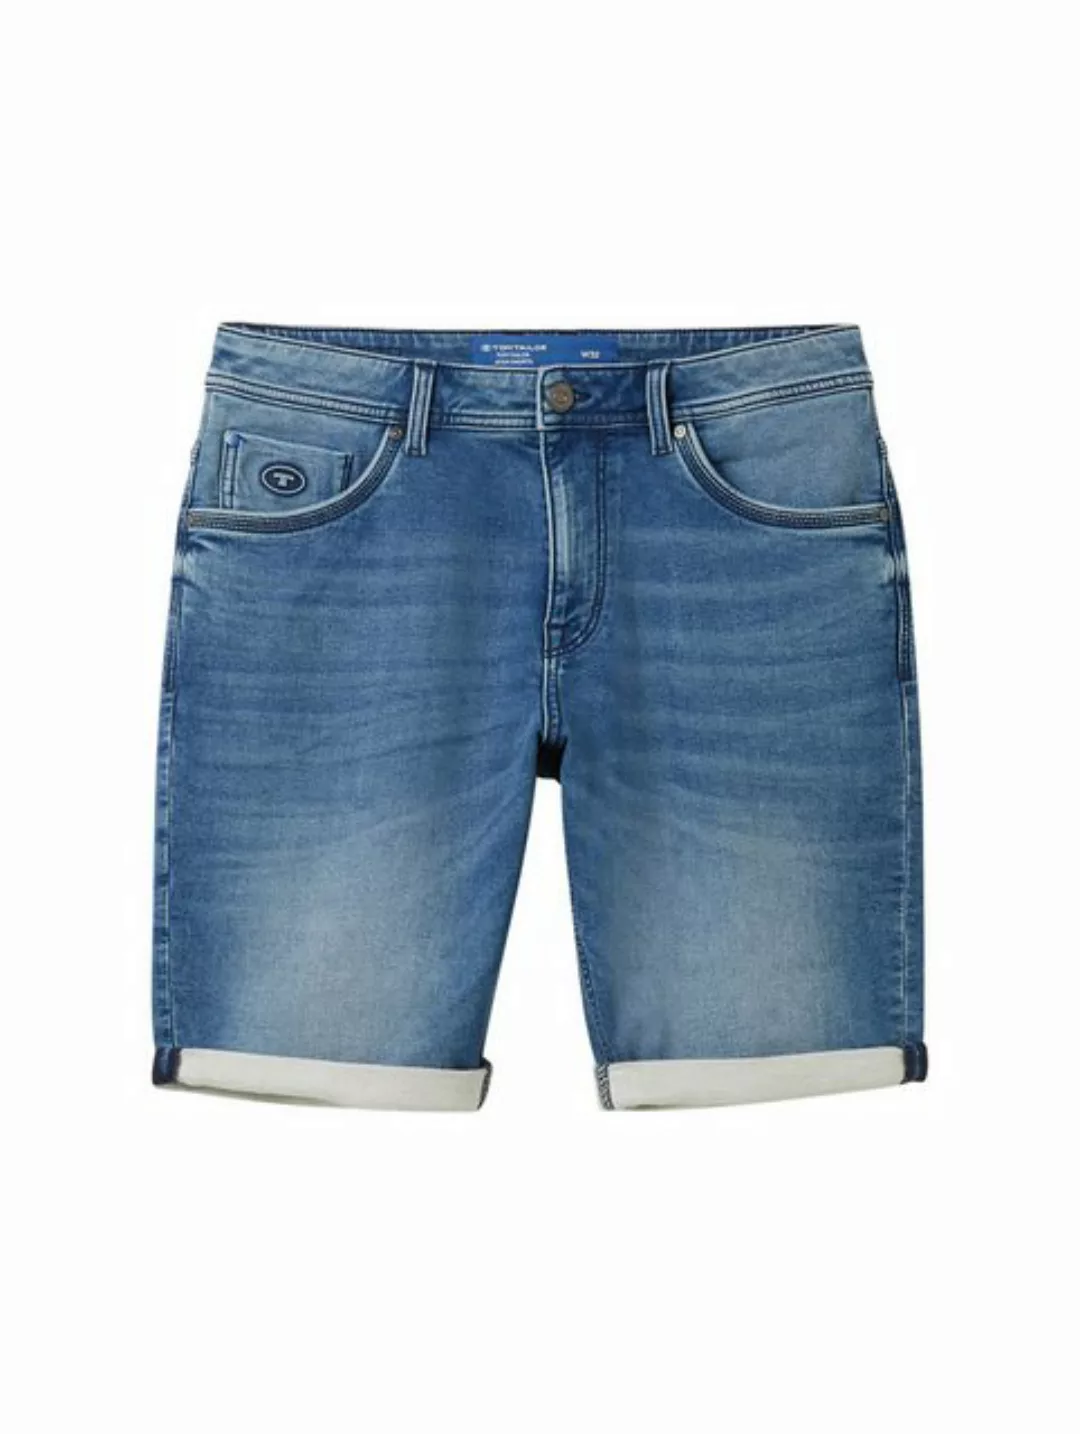 TOM TAILOR Jeansshorts Jeans Shorts Lässige Denim Shorts 7421 in Blau günstig online kaufen